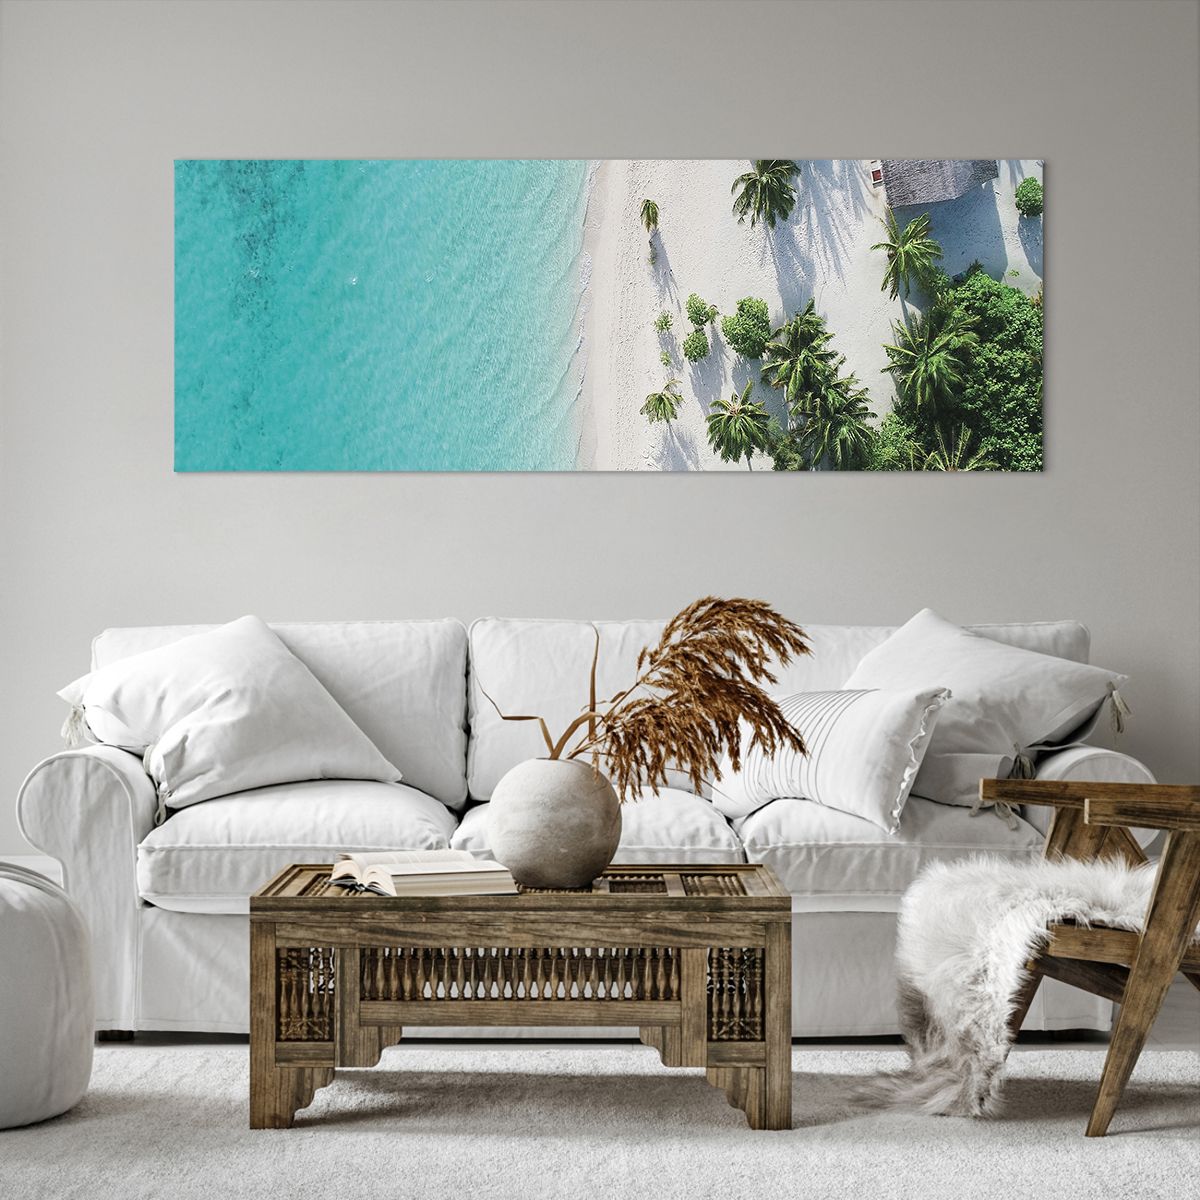 Bild auf Leinwand Landschaft, Bild auf Leinwand Paradiesischer Strand, Bild auf Leinwand Malediven, Bild auf Leinwand Meer, Bild auf Leinwand Reisen